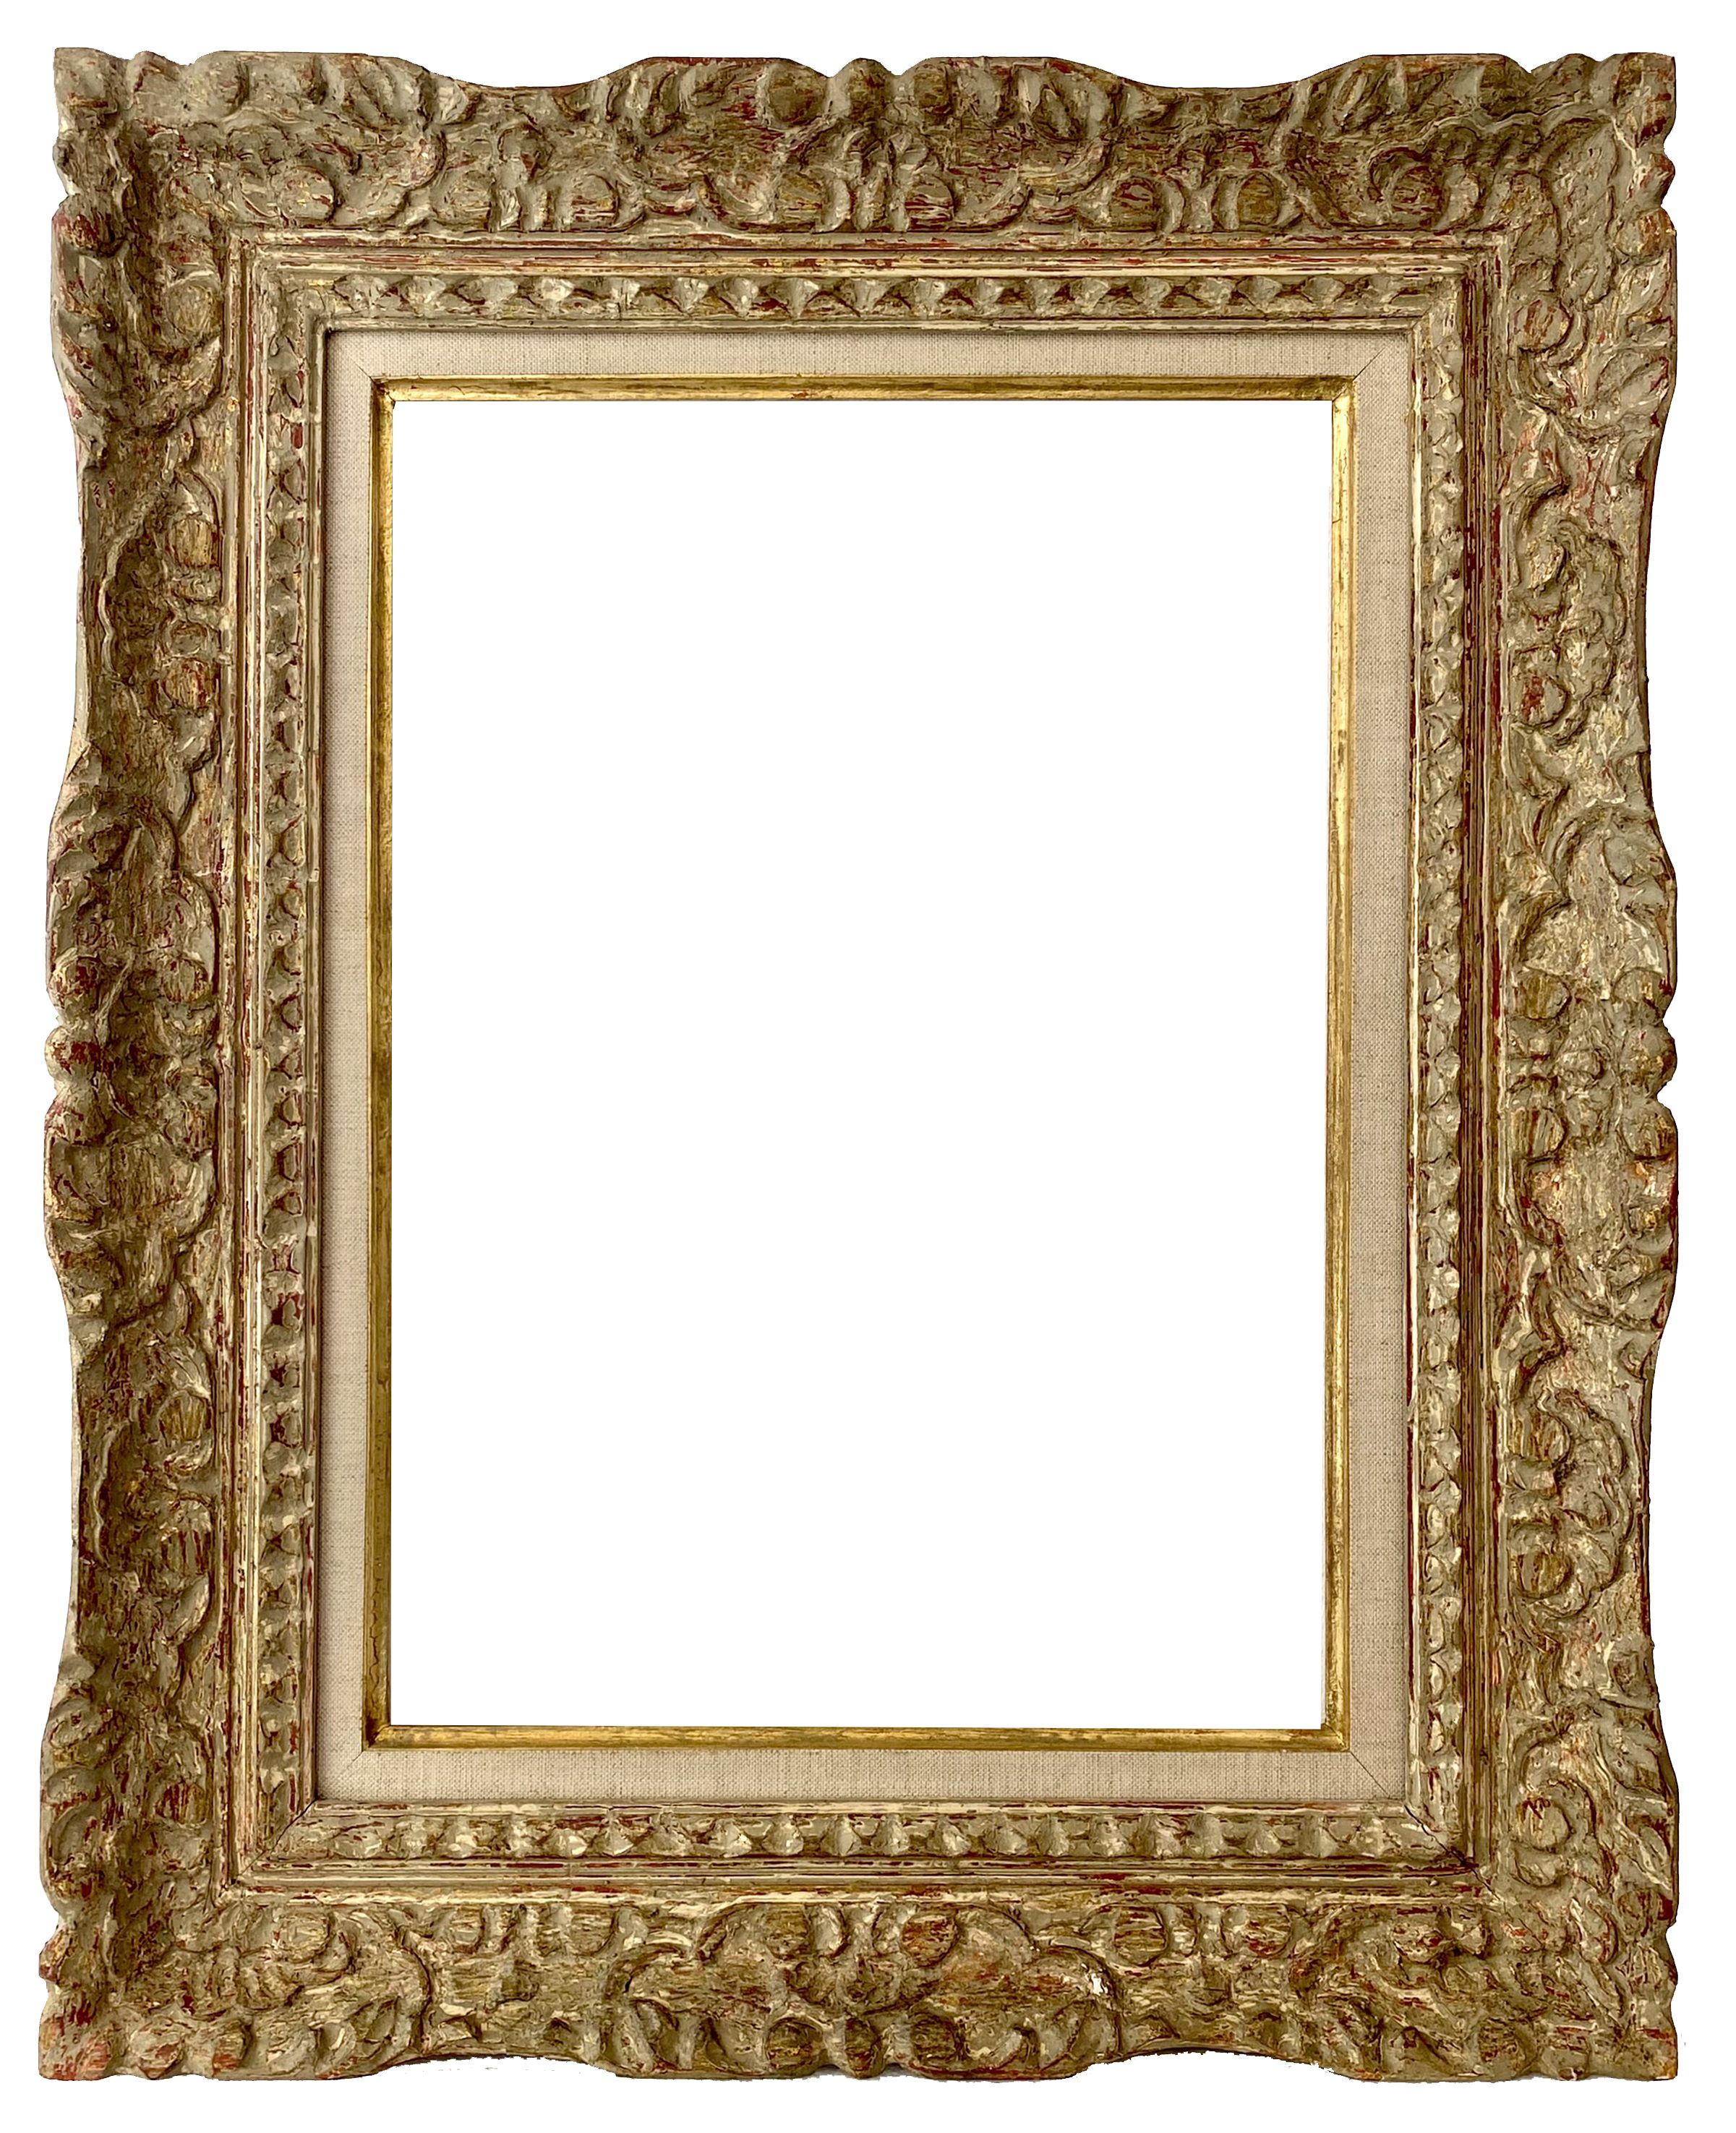 Montparnasse frame - 46.50 X 33.50 - Ref - 1583